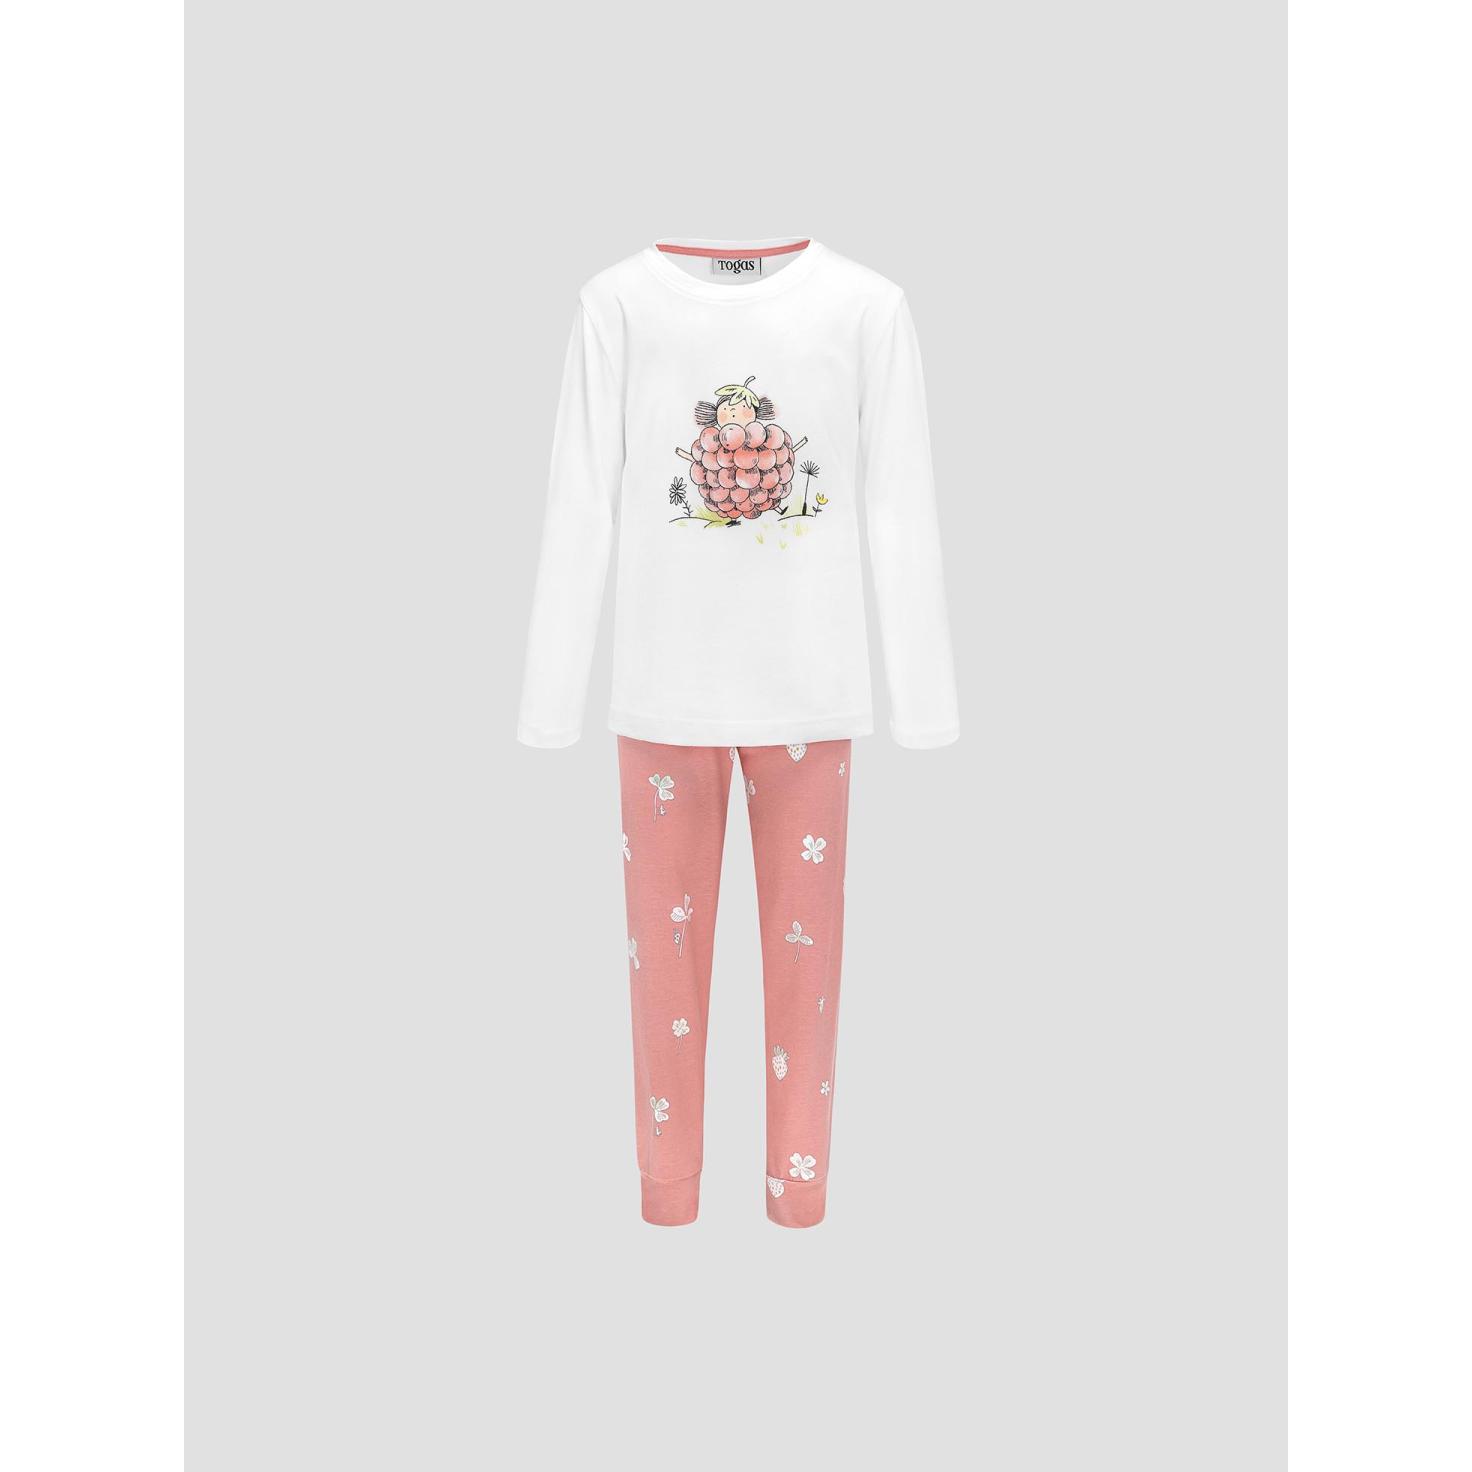 Пижама для девочек Kids by togas Стробби бело-розовый 128-134 см жен пижама с шортами инь янь белый р 48